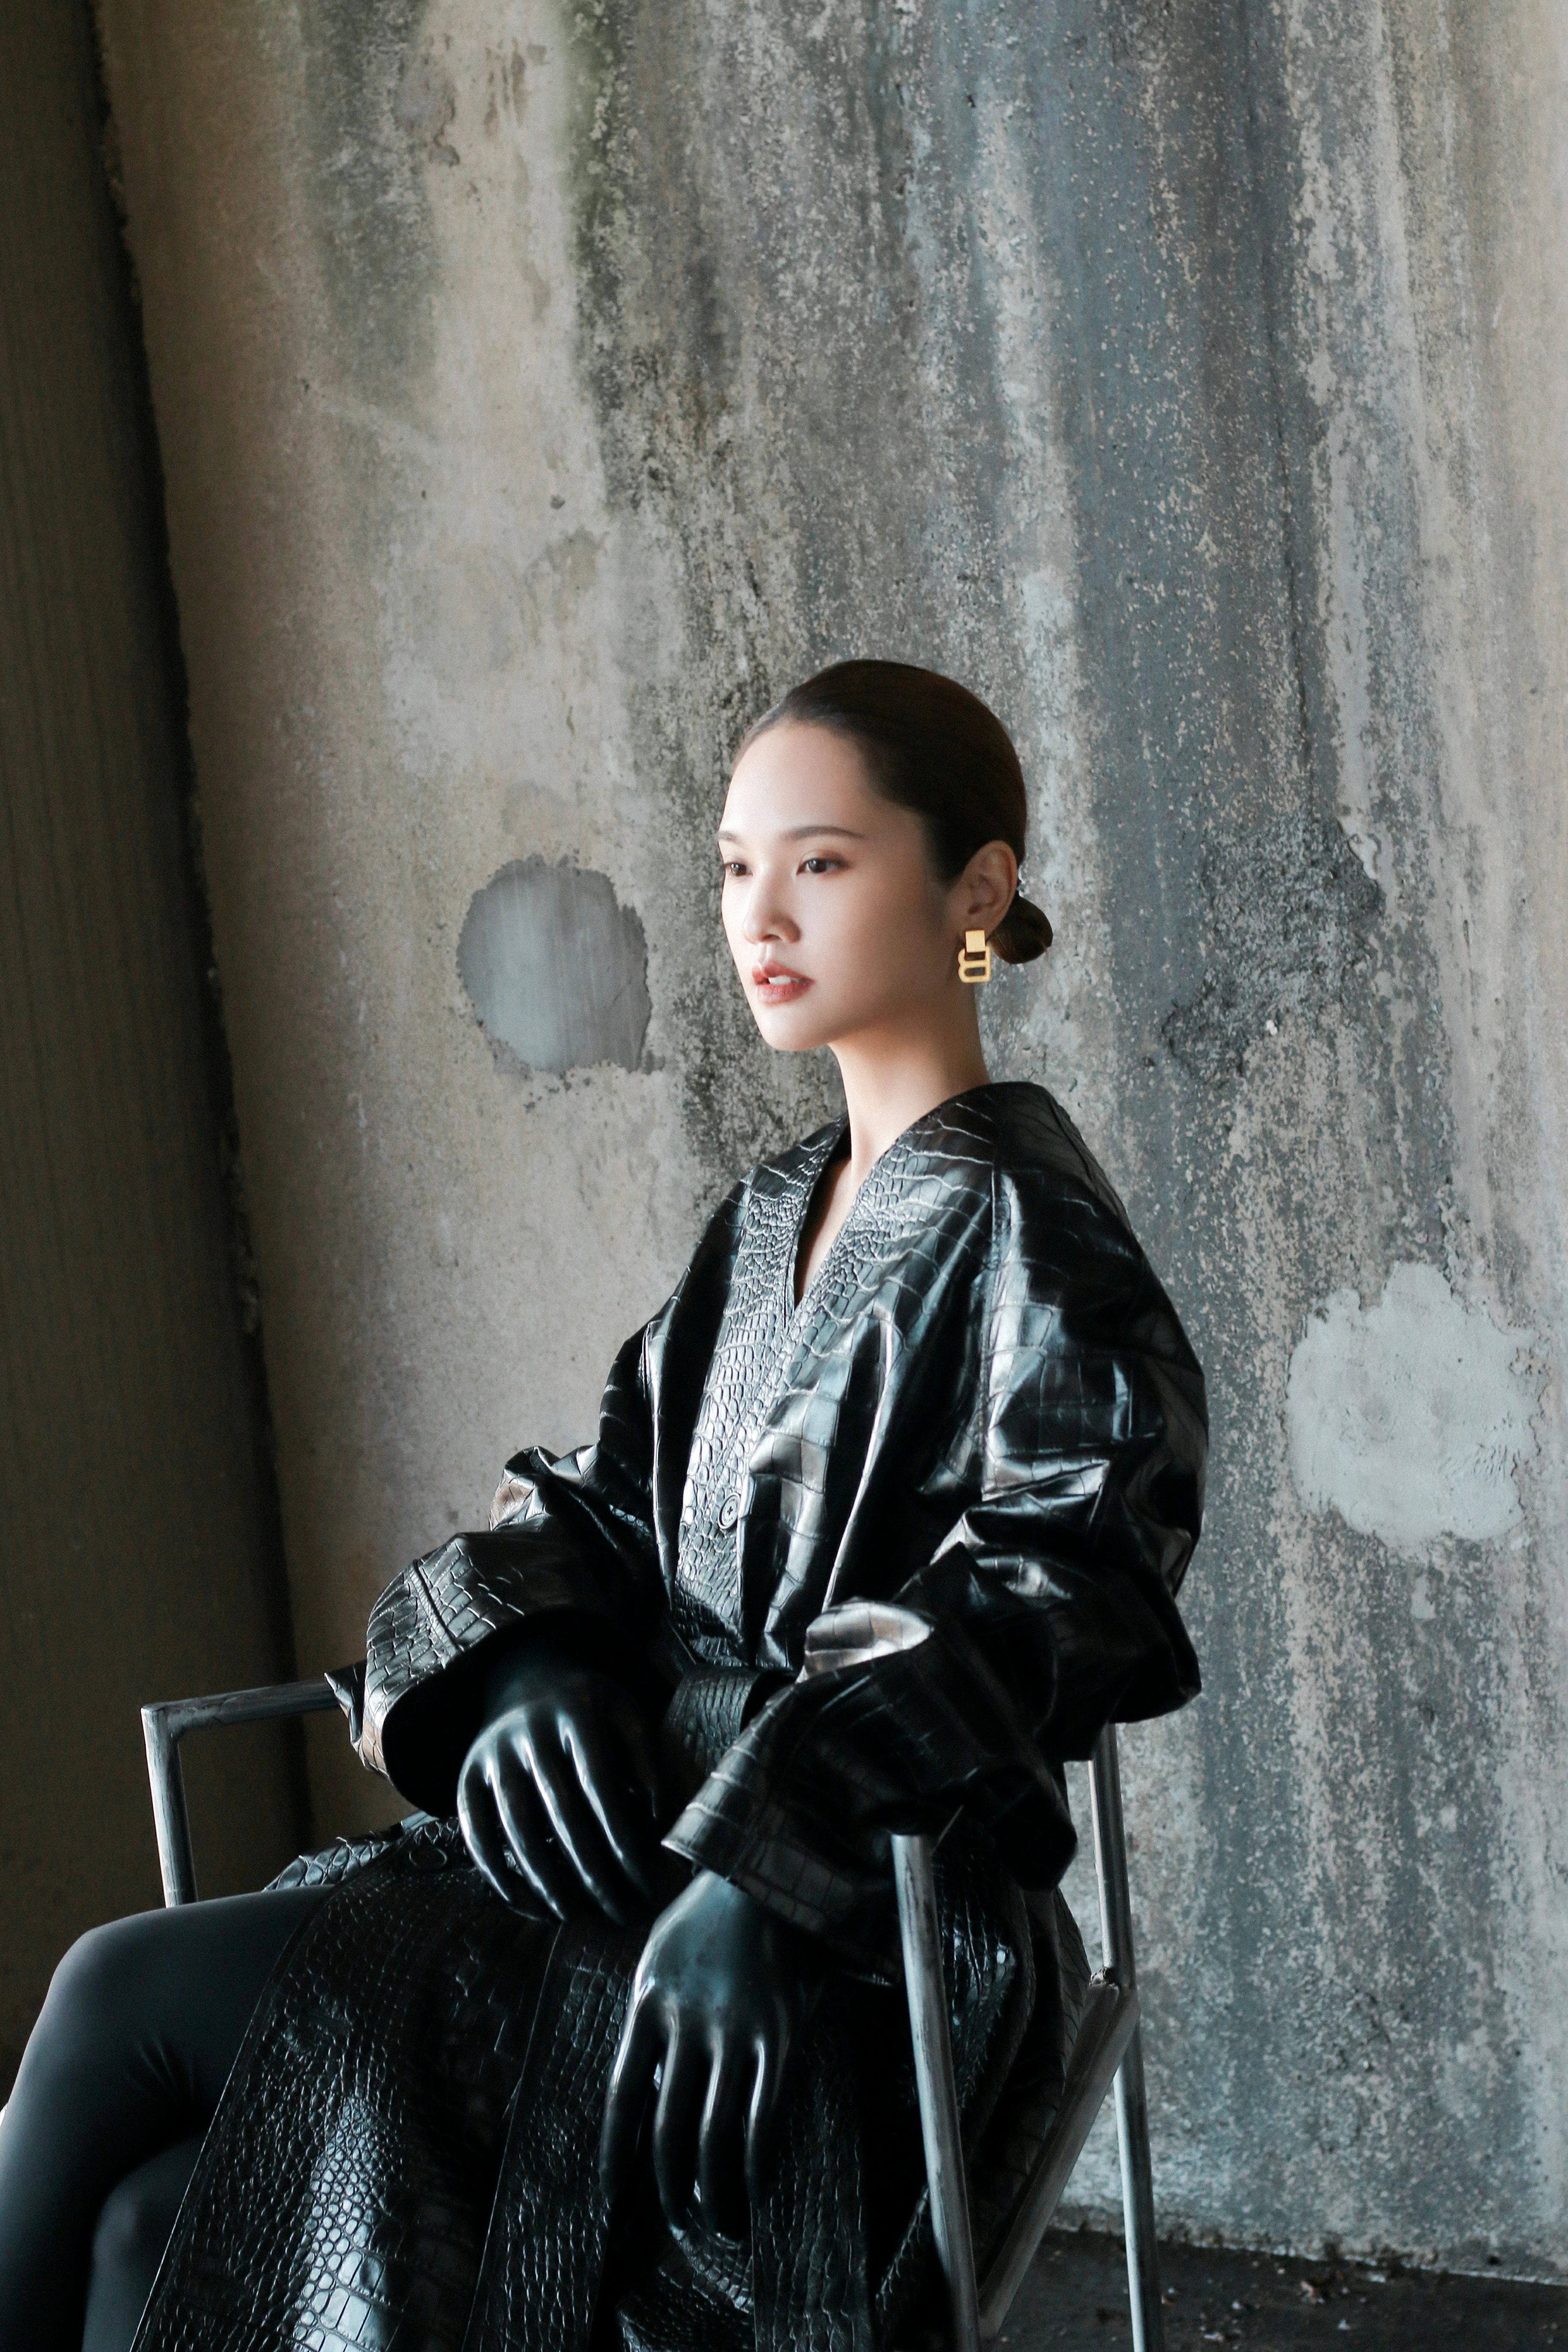 杨丞琳发布《我们的歌》舞台照 链条流苏皮裙造型秀小蛮腰,18